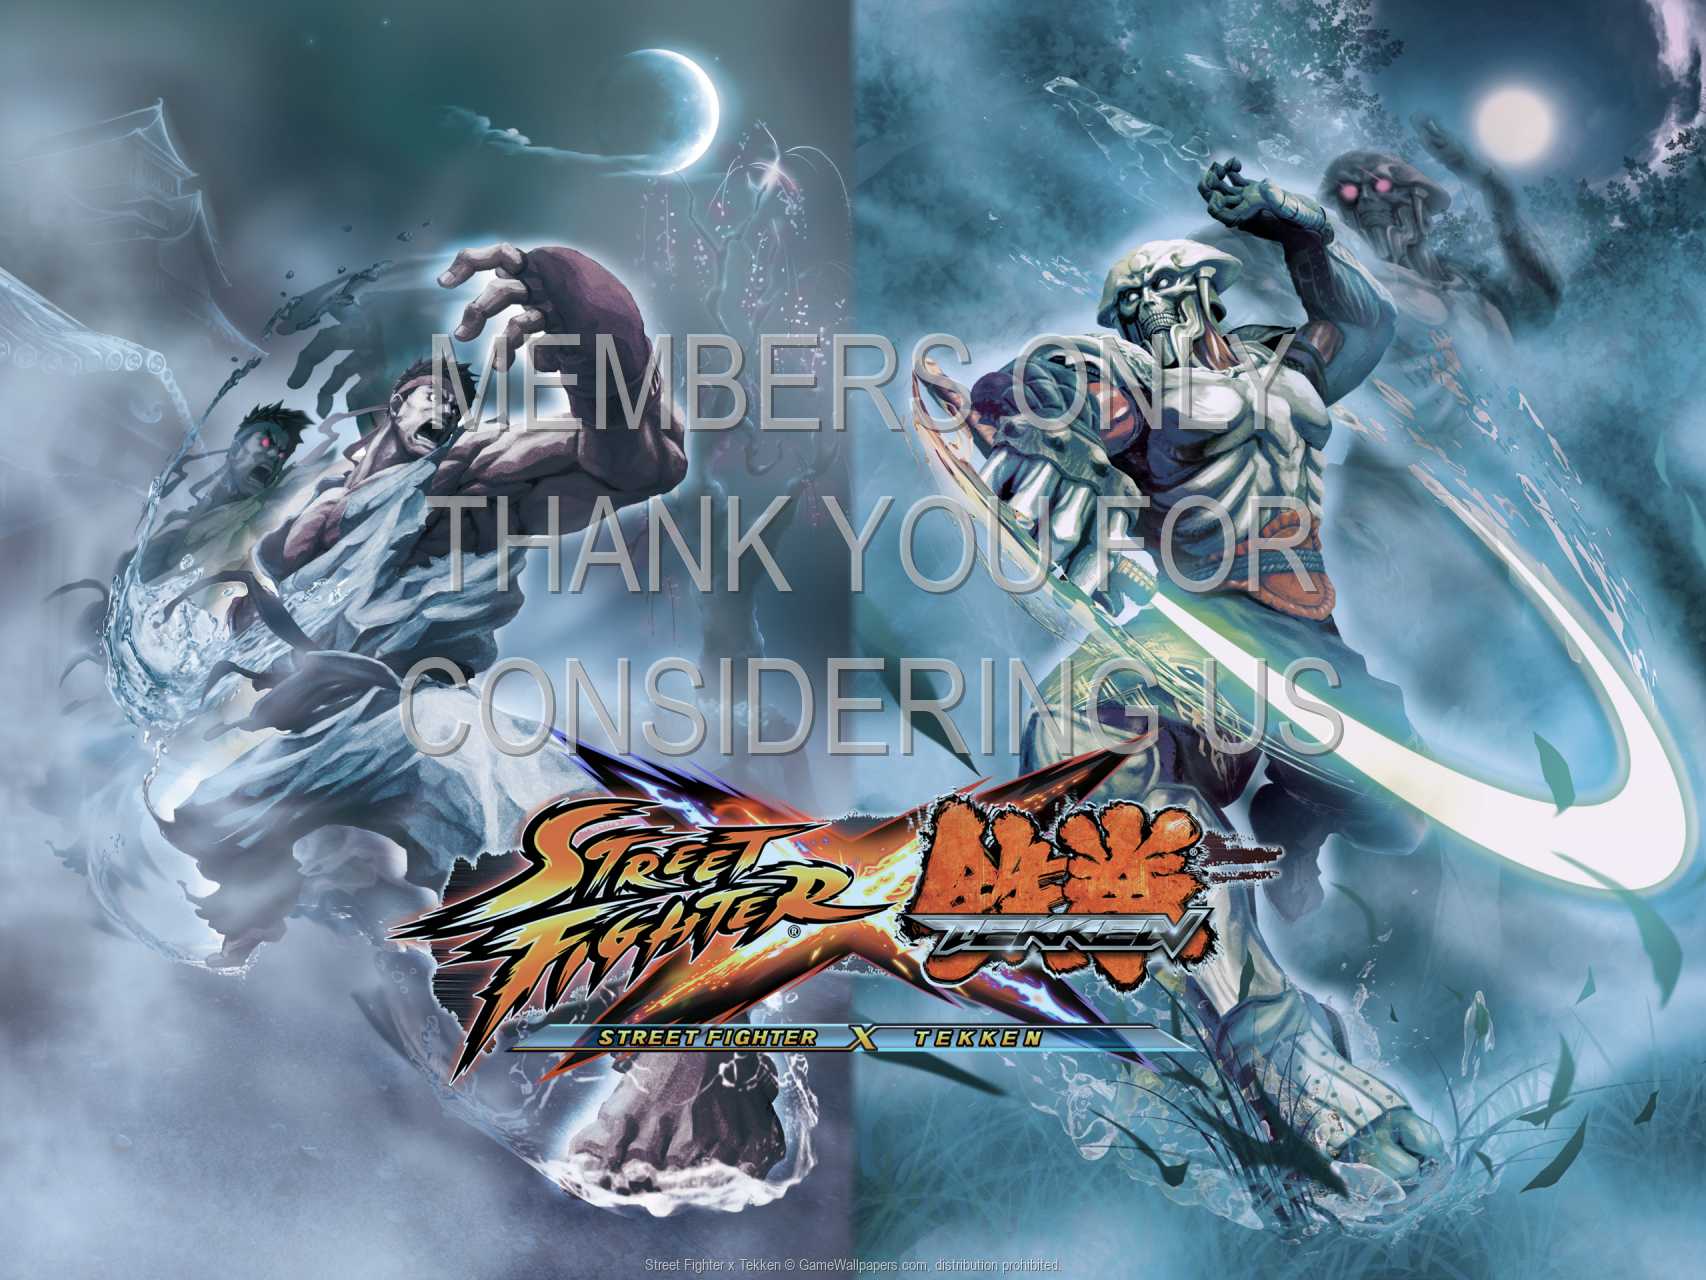 Street Fighter x Tekken 720p%20Horizontal Mobile wallpaper or background 03